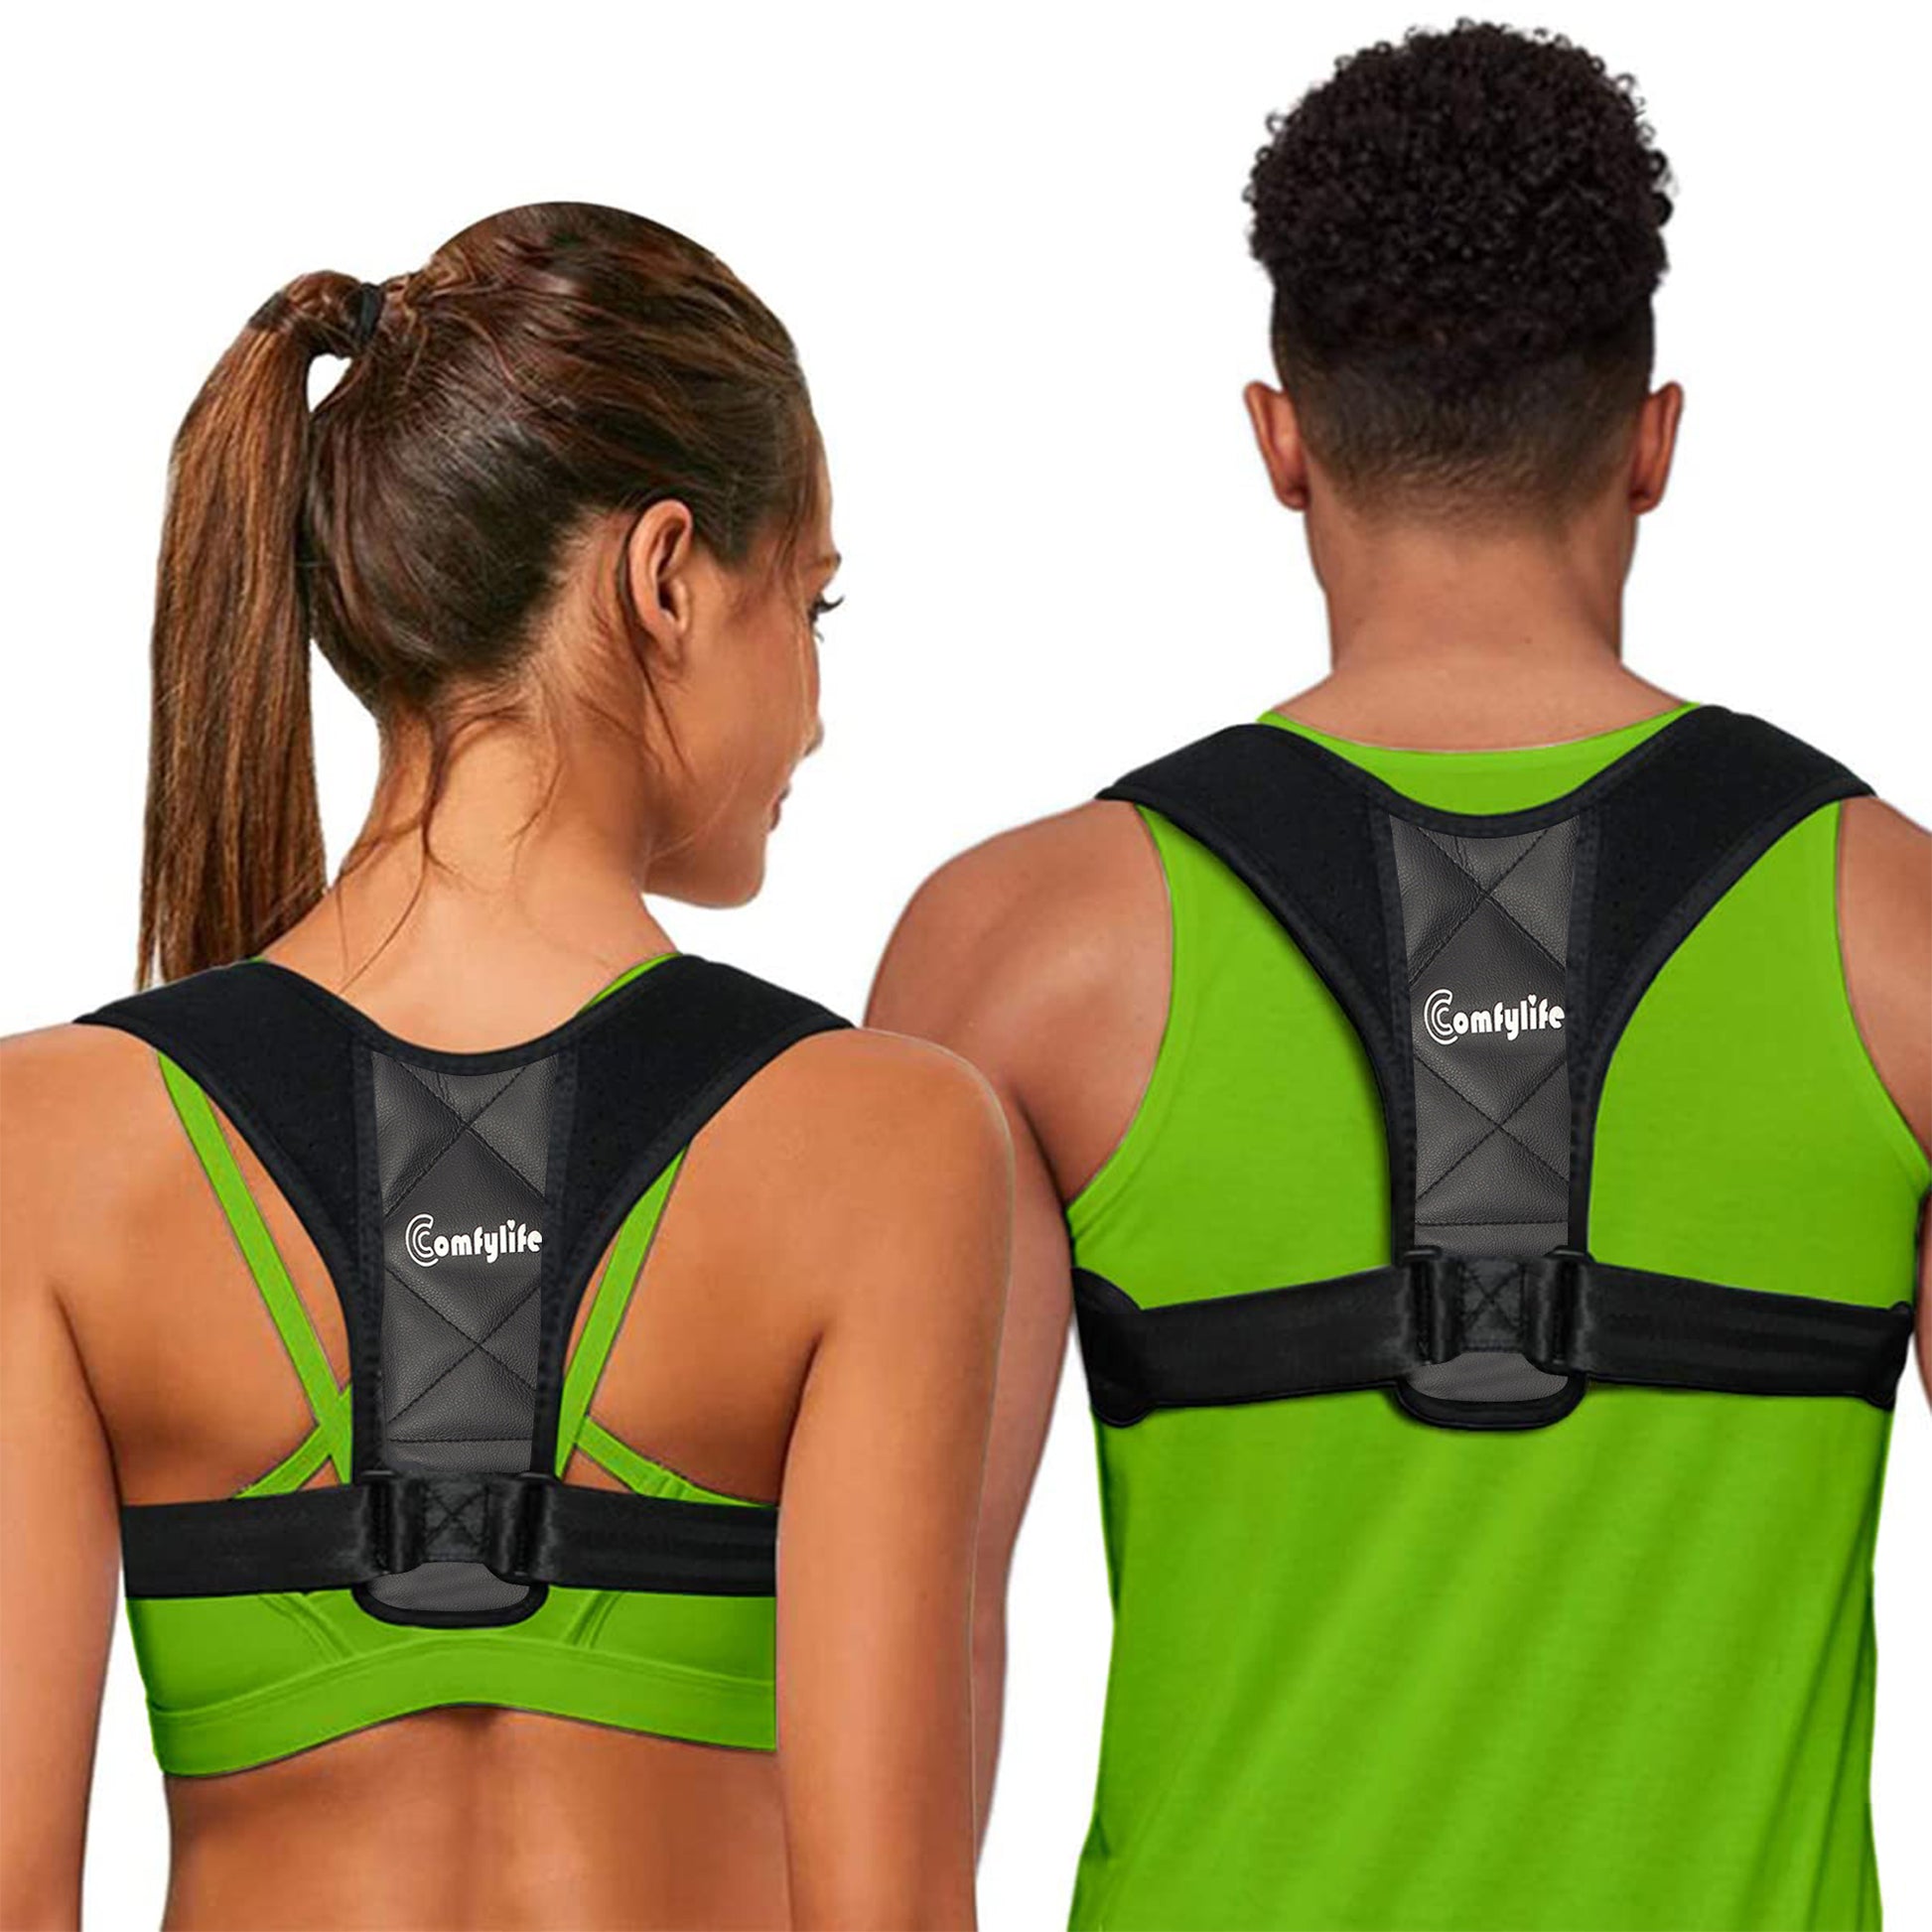 Adjustable Body Posture Corrector Belt for Men and Women - Medi